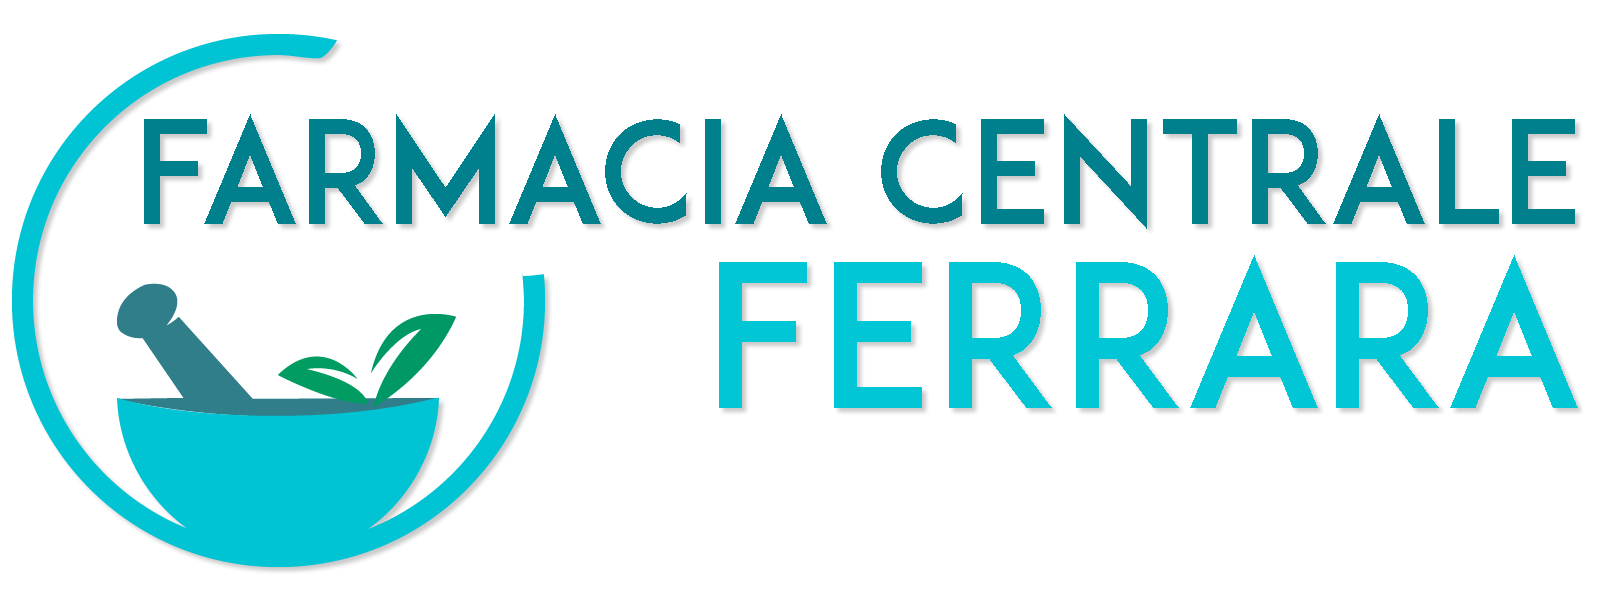 FARMACIA CENTRALE FERRARA Home Page